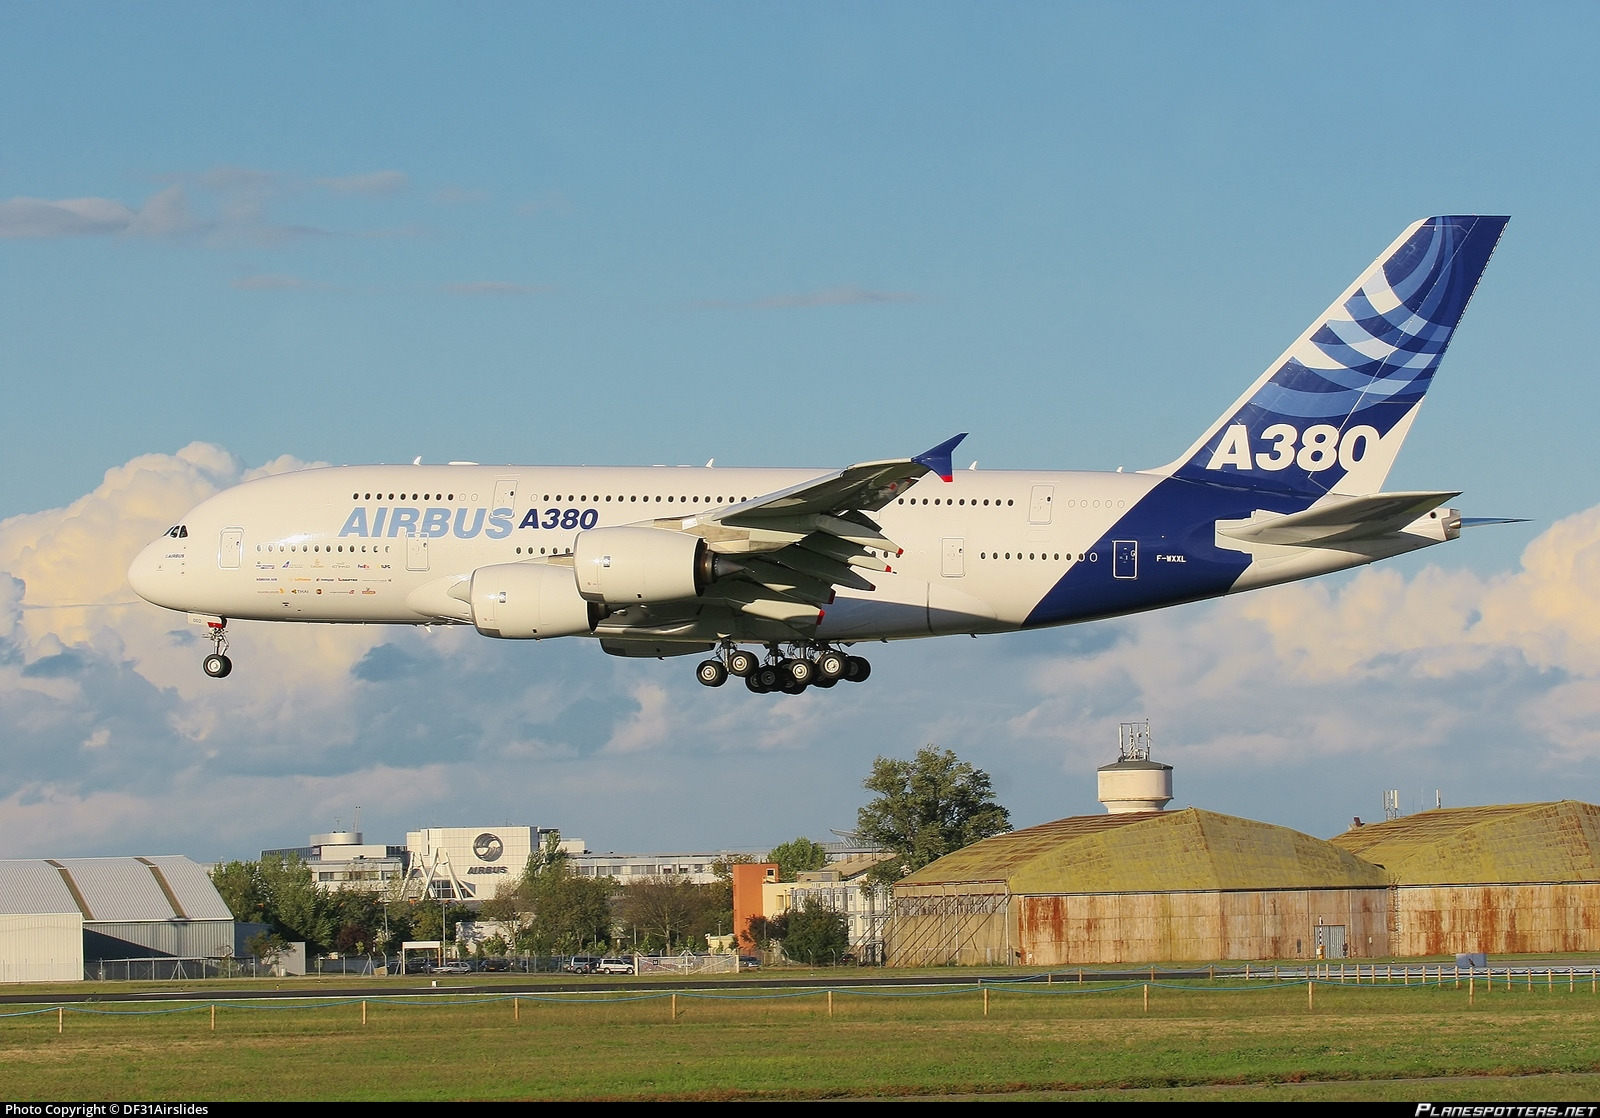 2nd A380